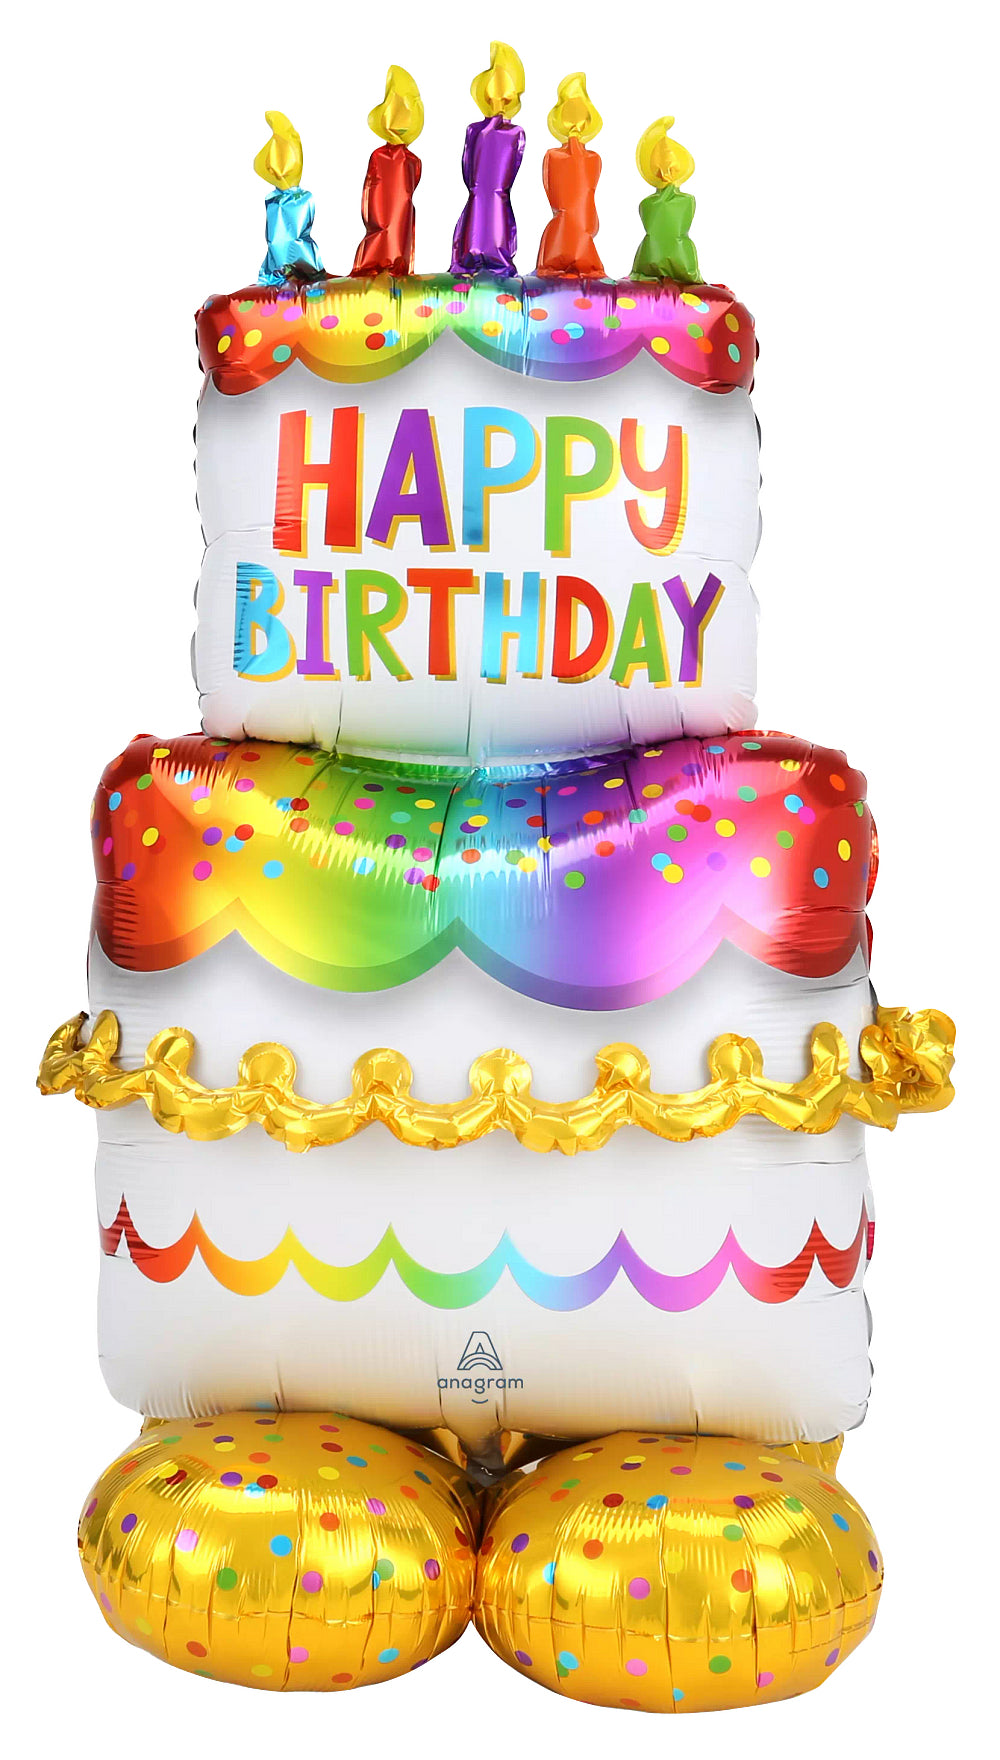 Happy Birthday Cake - Airloonz